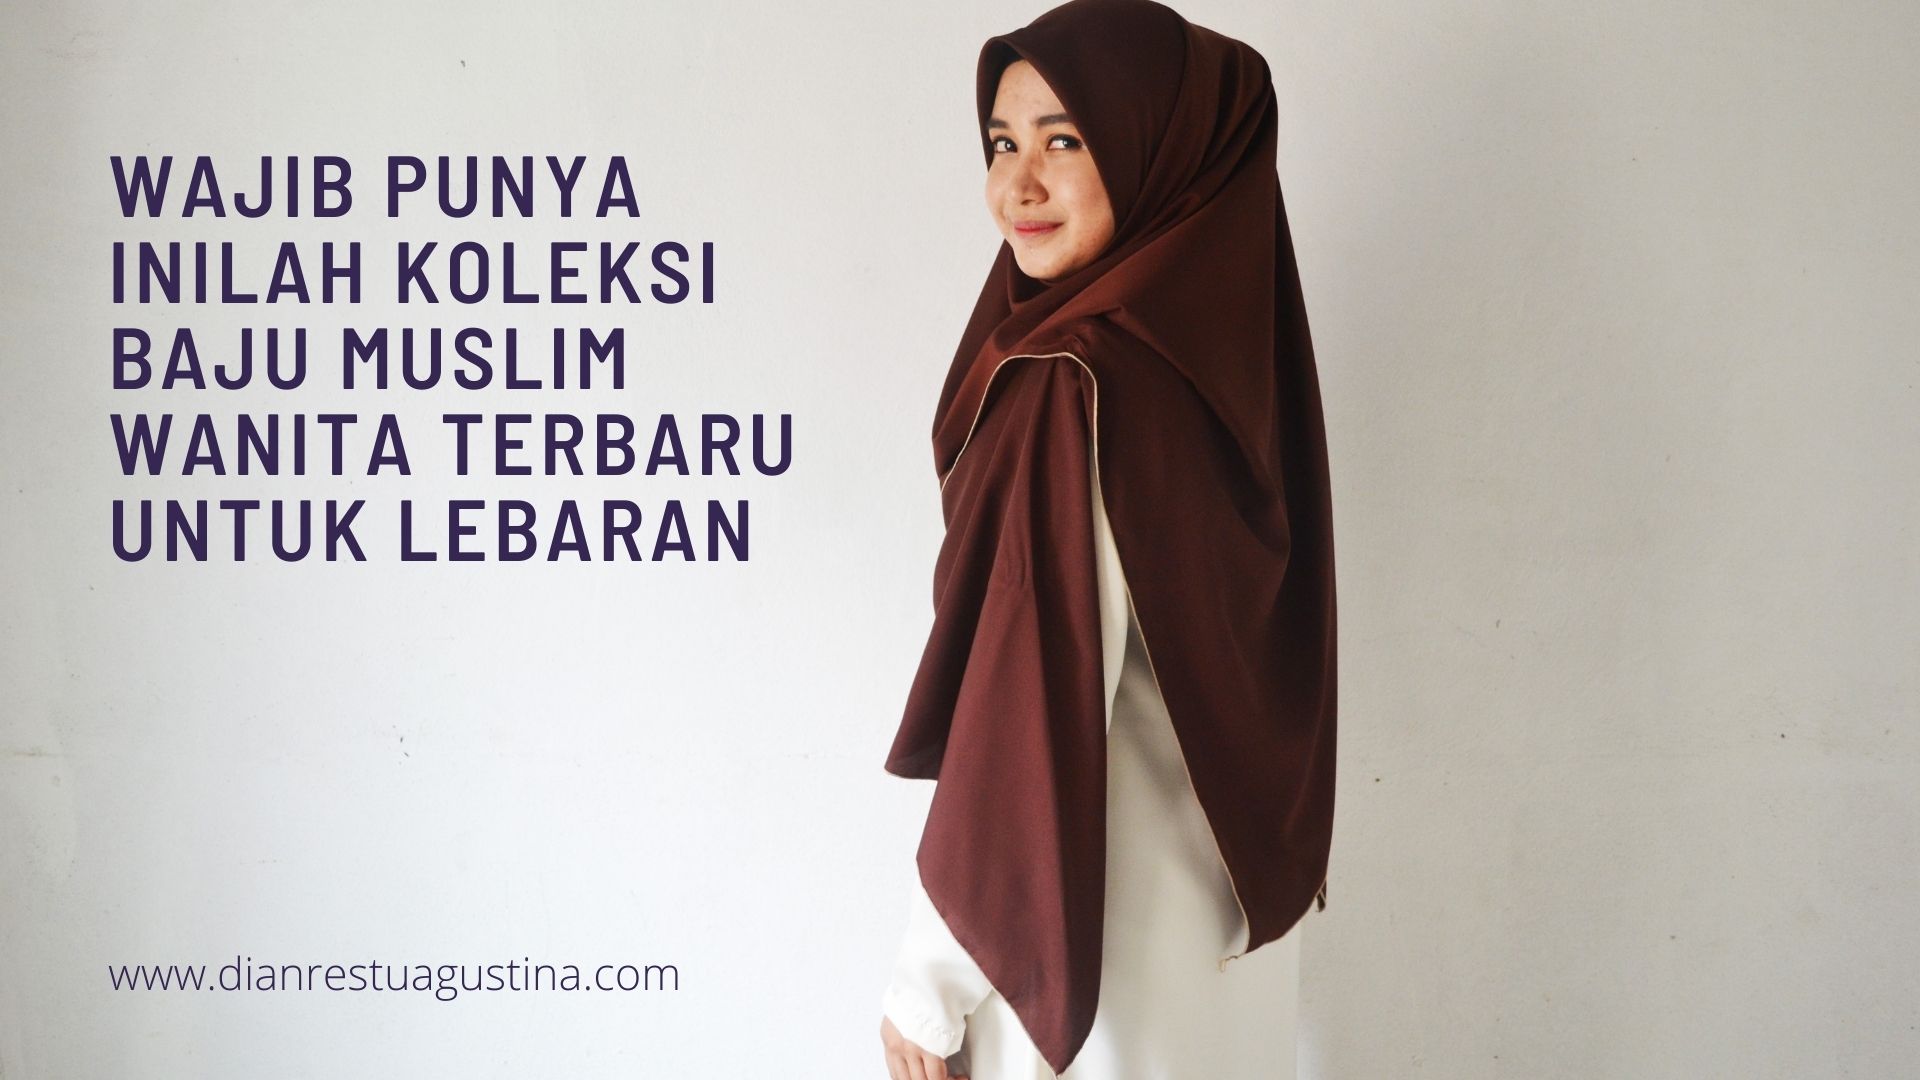 Wajib Punya Inilah Koleksi Baju Muslim Wanita Terbaru untuk Lebaran